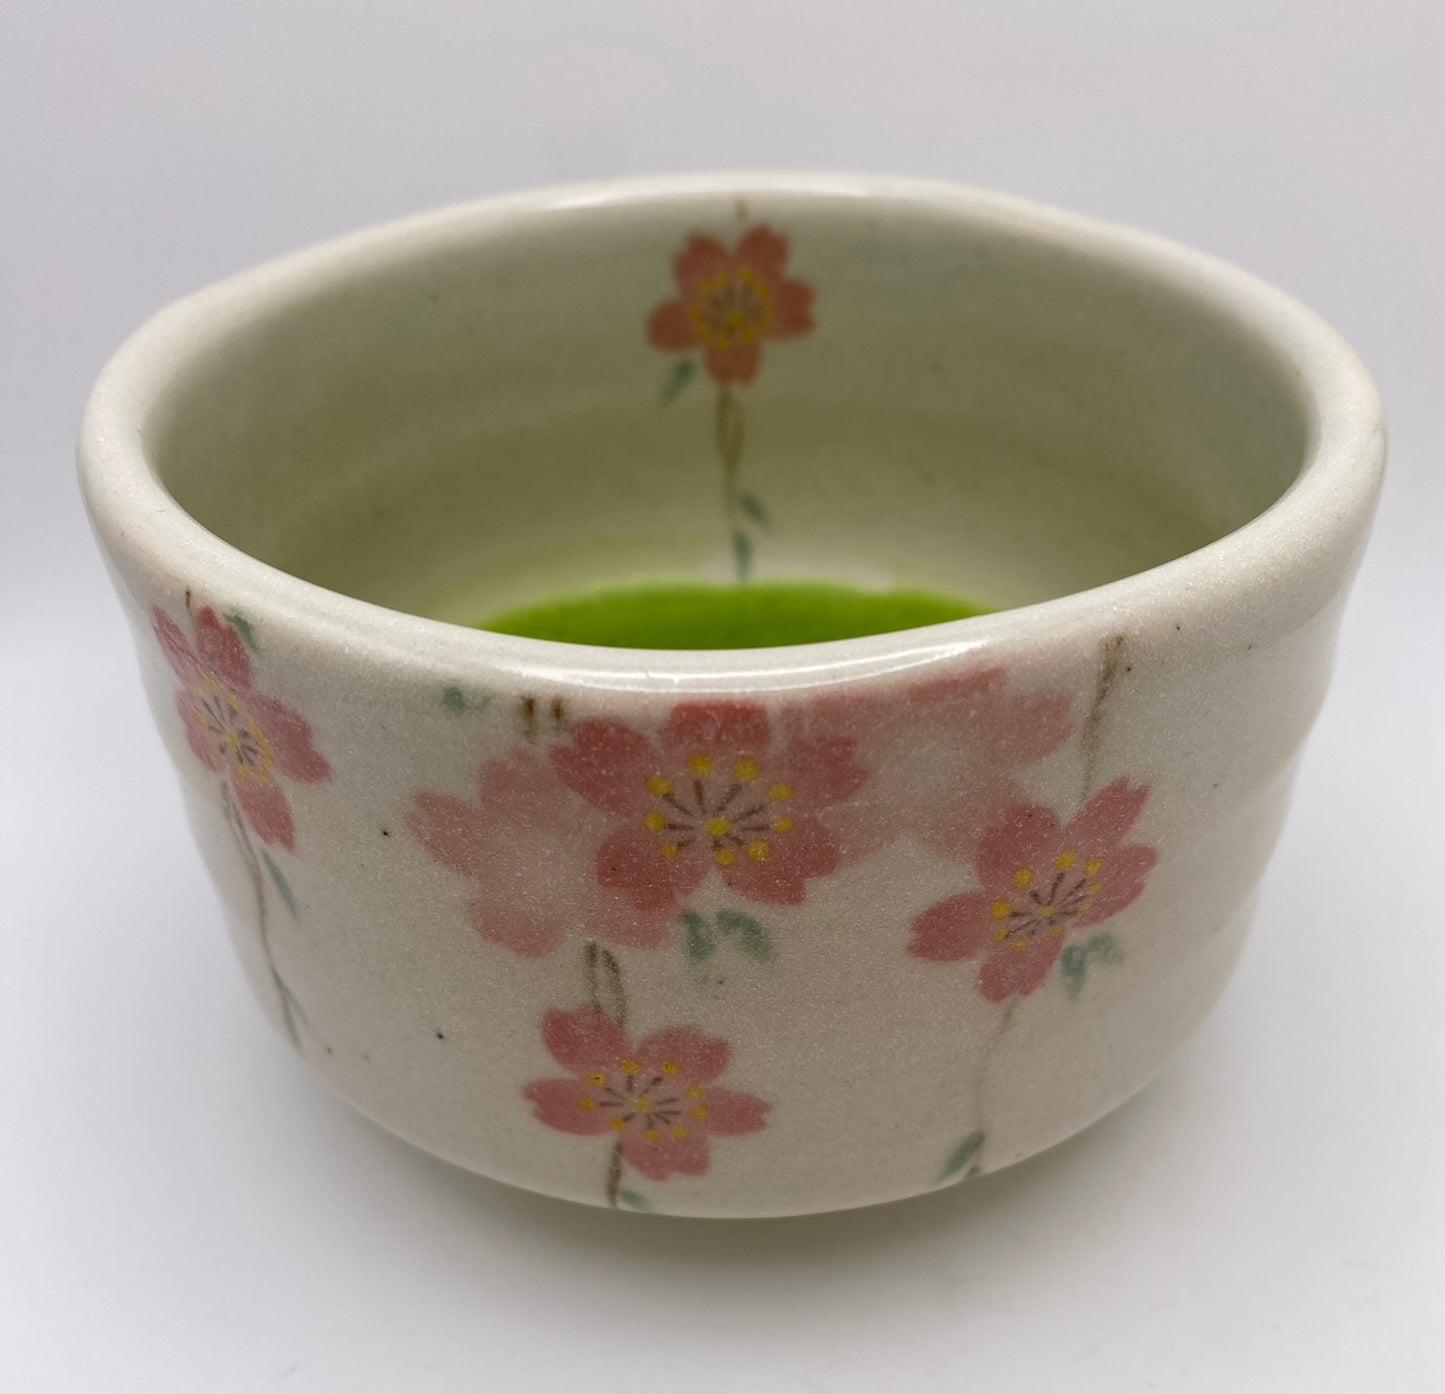 Sakura Hand Painted Cherry Blossom on White Clay Handmade Chawan Matcha Bowl (Large)